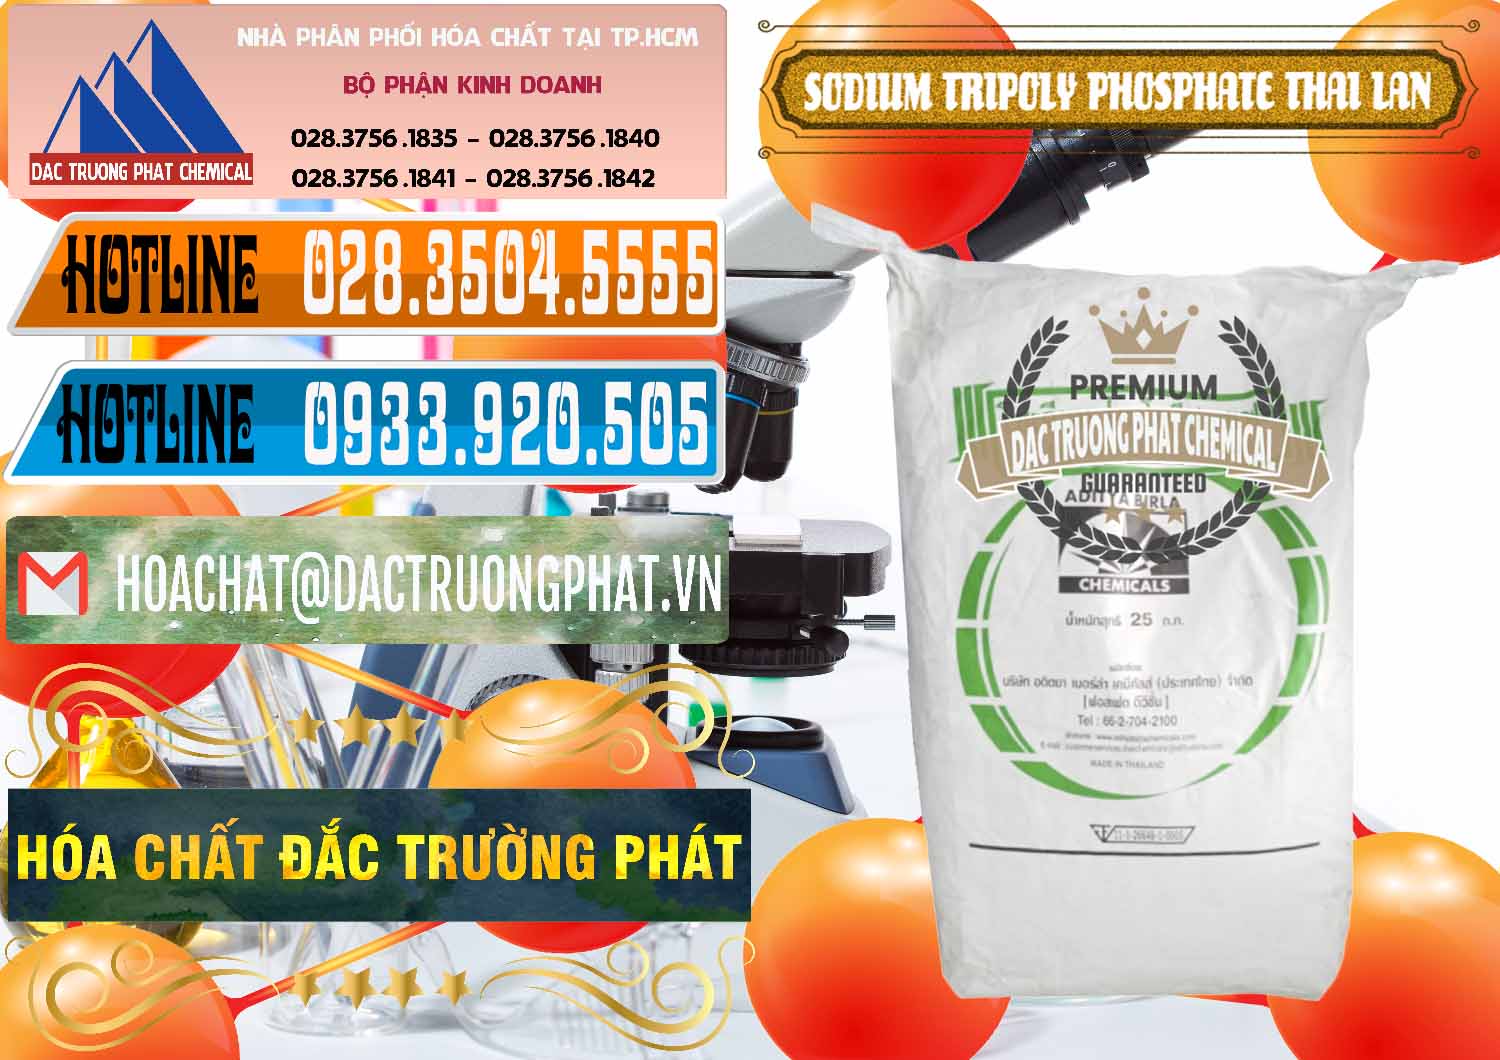 Cty chuyên cung cấp và bán Sodium Tripoly Phosphate - STPP Aditya Birla Grasim Thái Lan Thailand - 0421 - Công ty chuyên phân phối - bán hóa chất tại TP.HCM - stmp.net